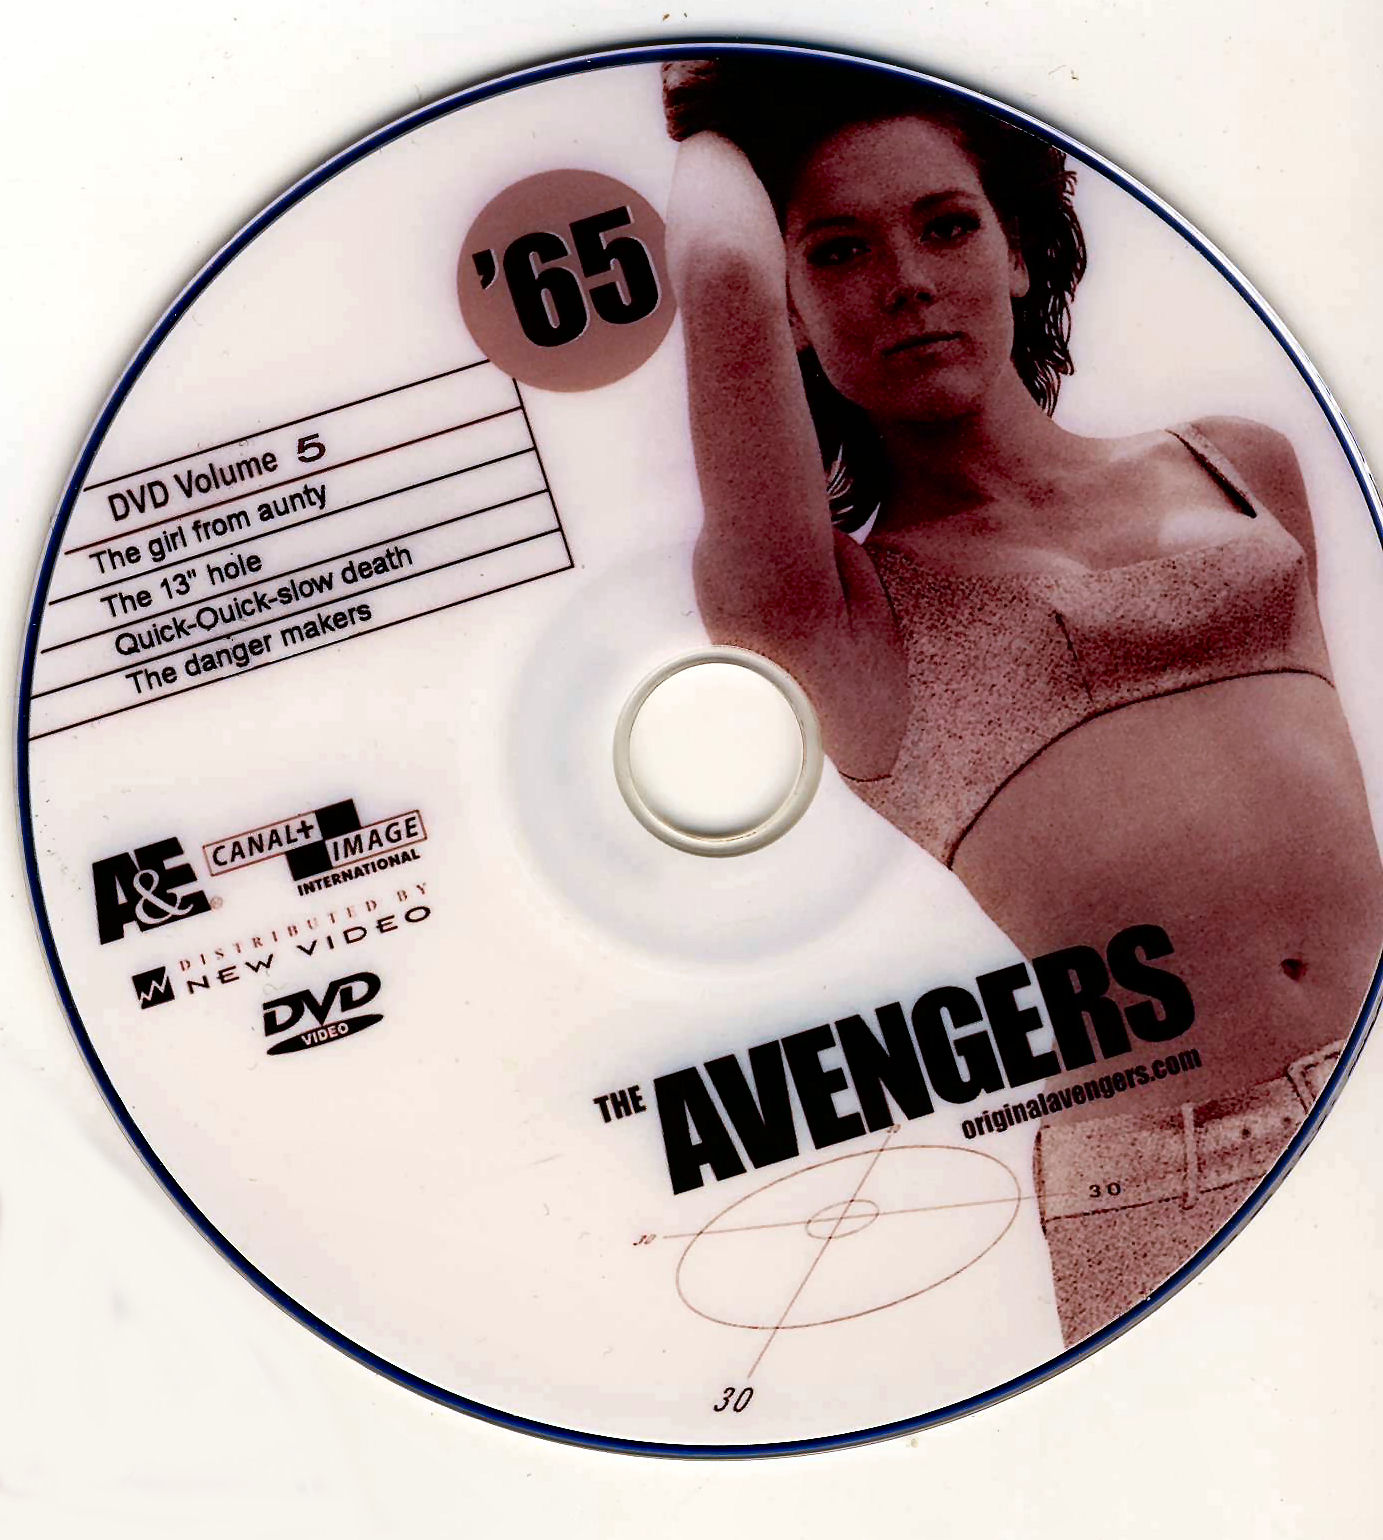 De Wrekers (The Avengers) 1965 - 66 DvD 5